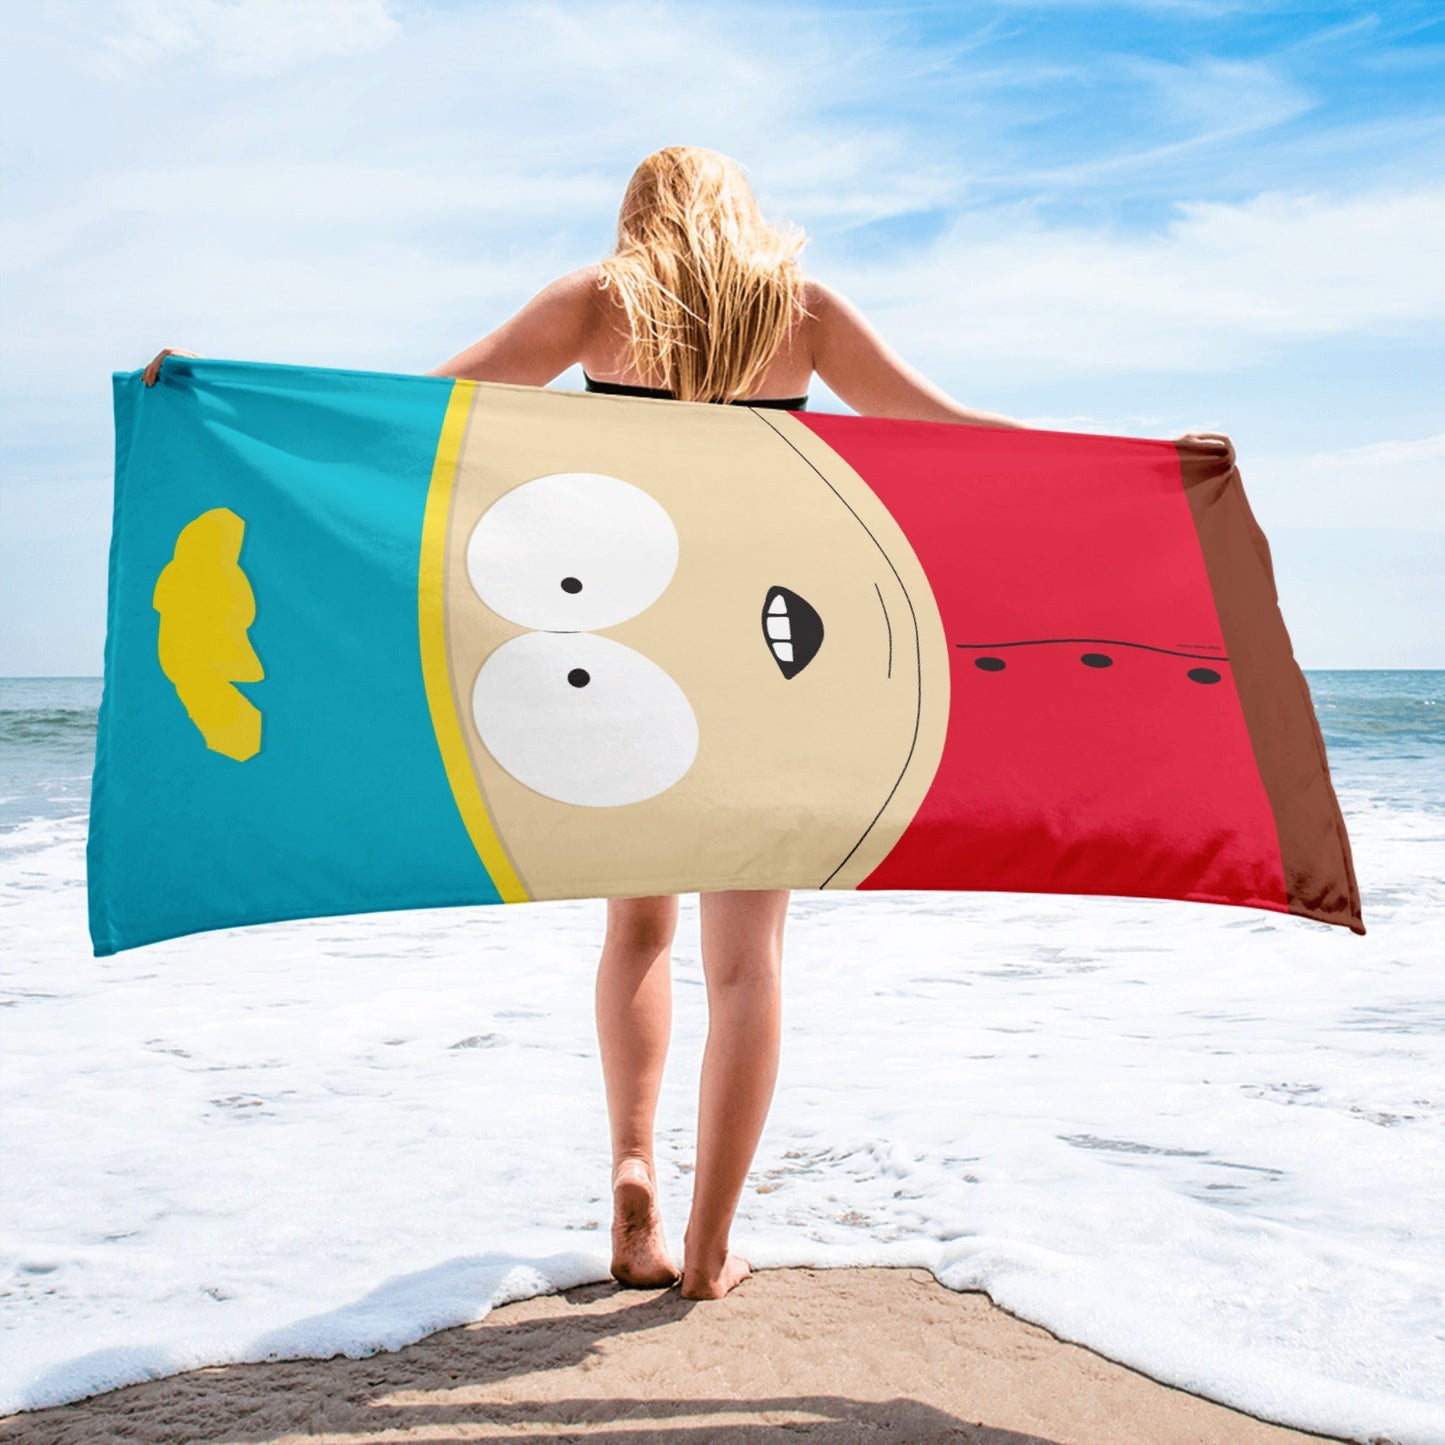 South Park Cartman Beach Towel - Paramount Shop